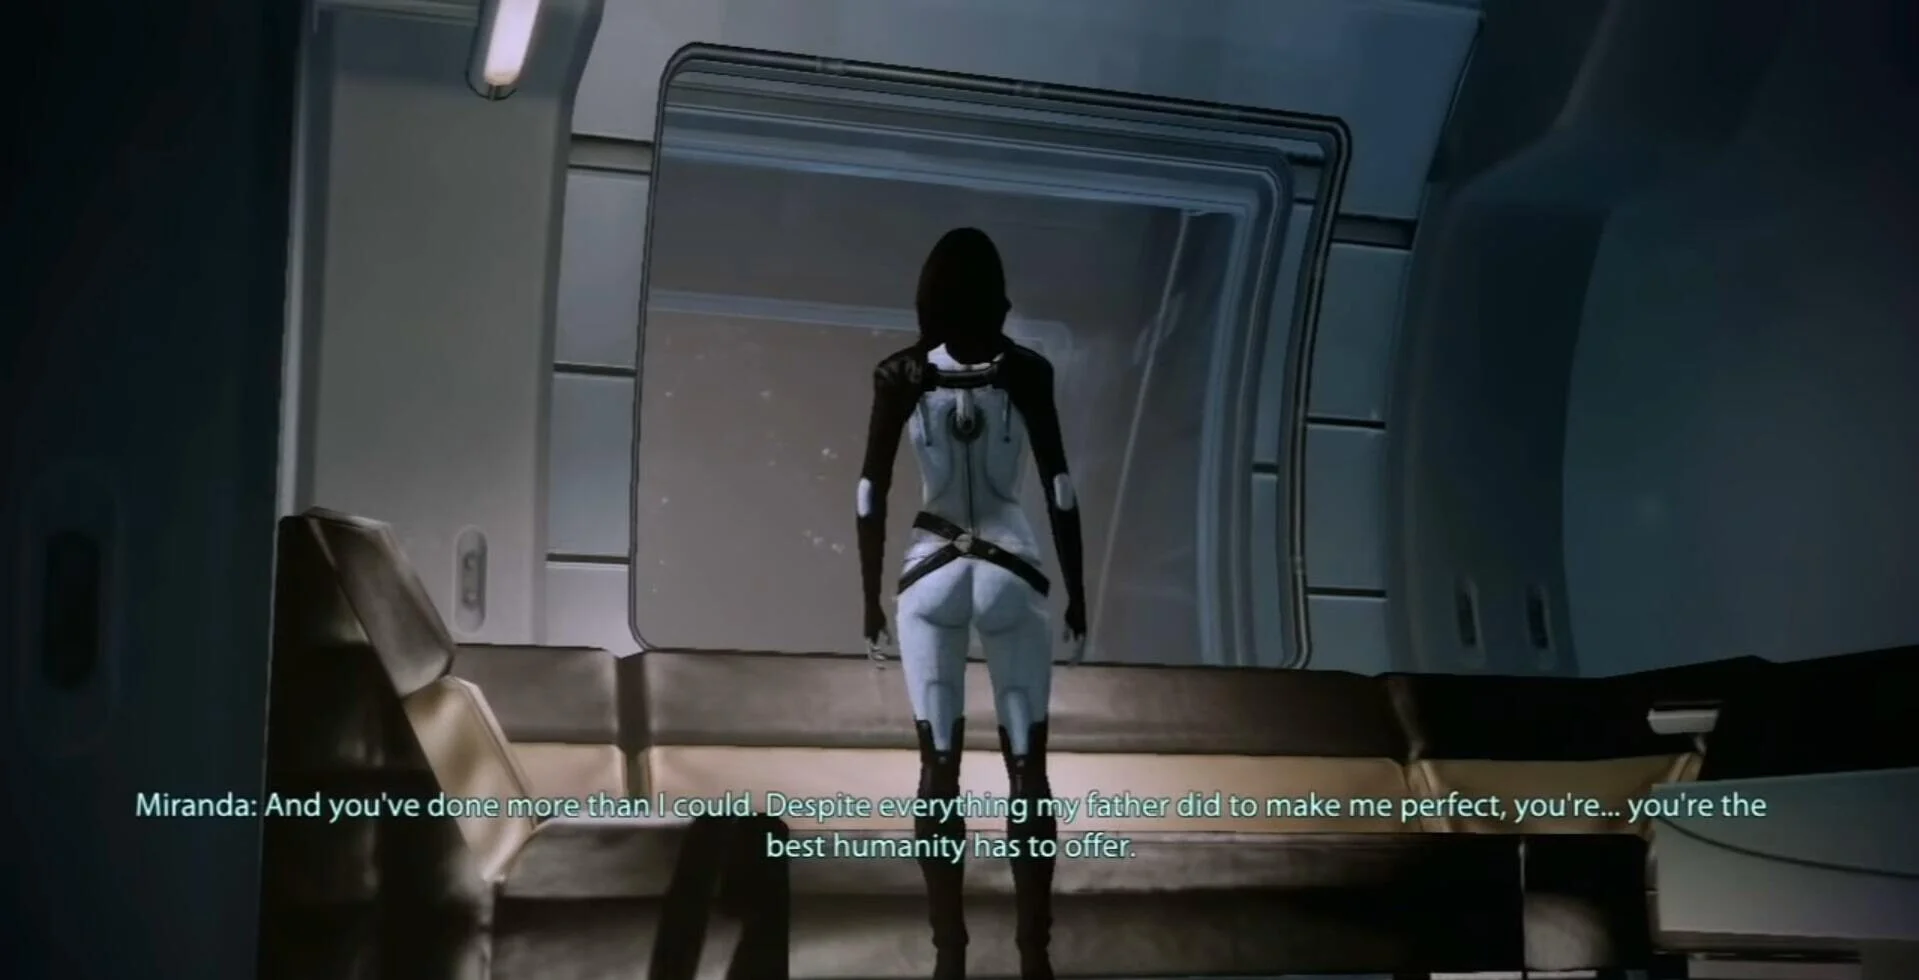 СМИ провели расследование о сценах с попой Миранды в Mass Effect Legendary Edition - фото 7